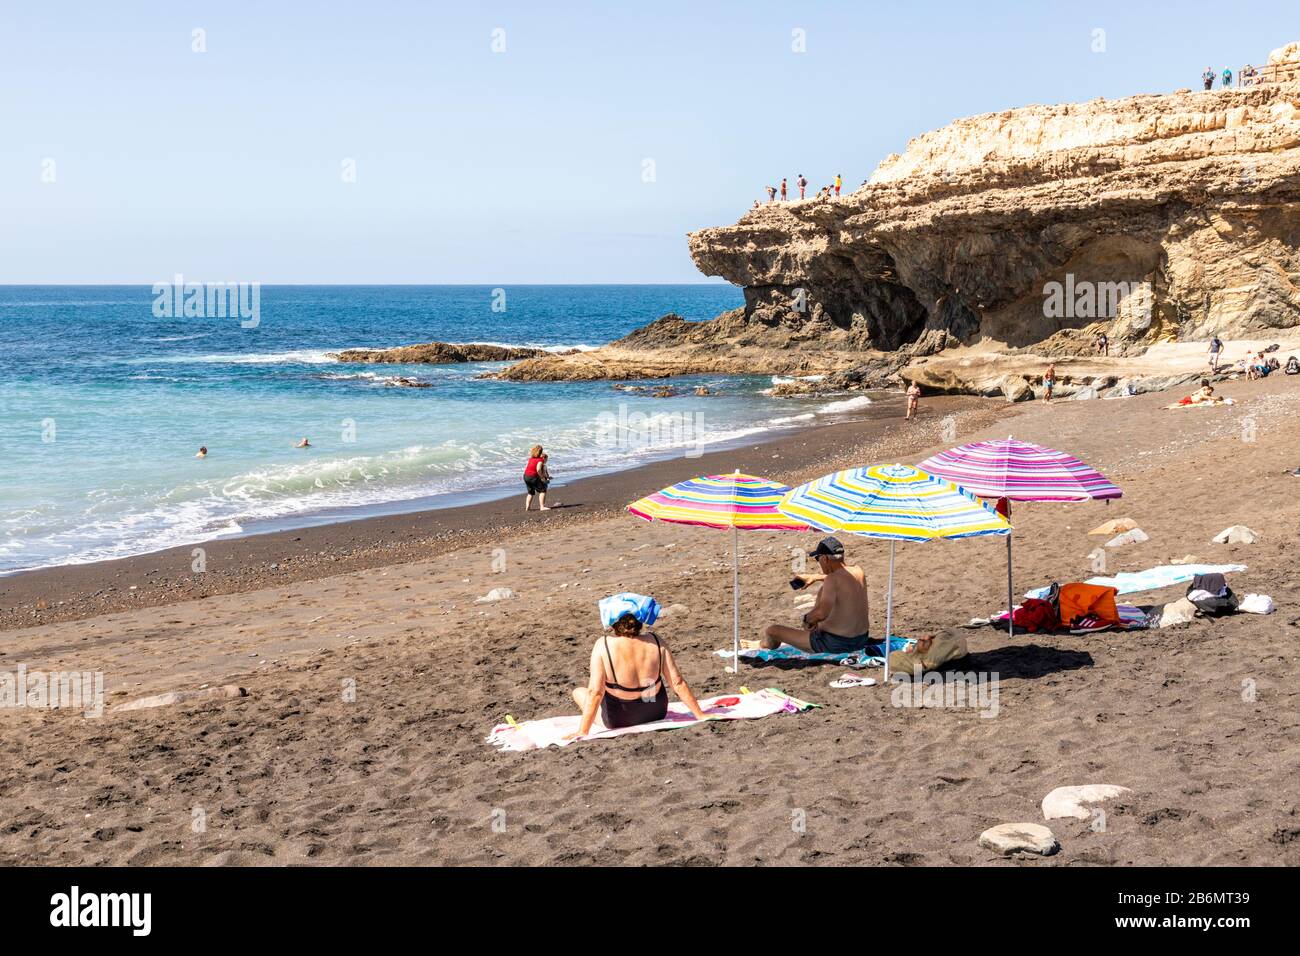 La plage et les formations rocheuses à Ajuy sur la côte ouest de l'île des Canaries de Fuerteventura Banque D'Images